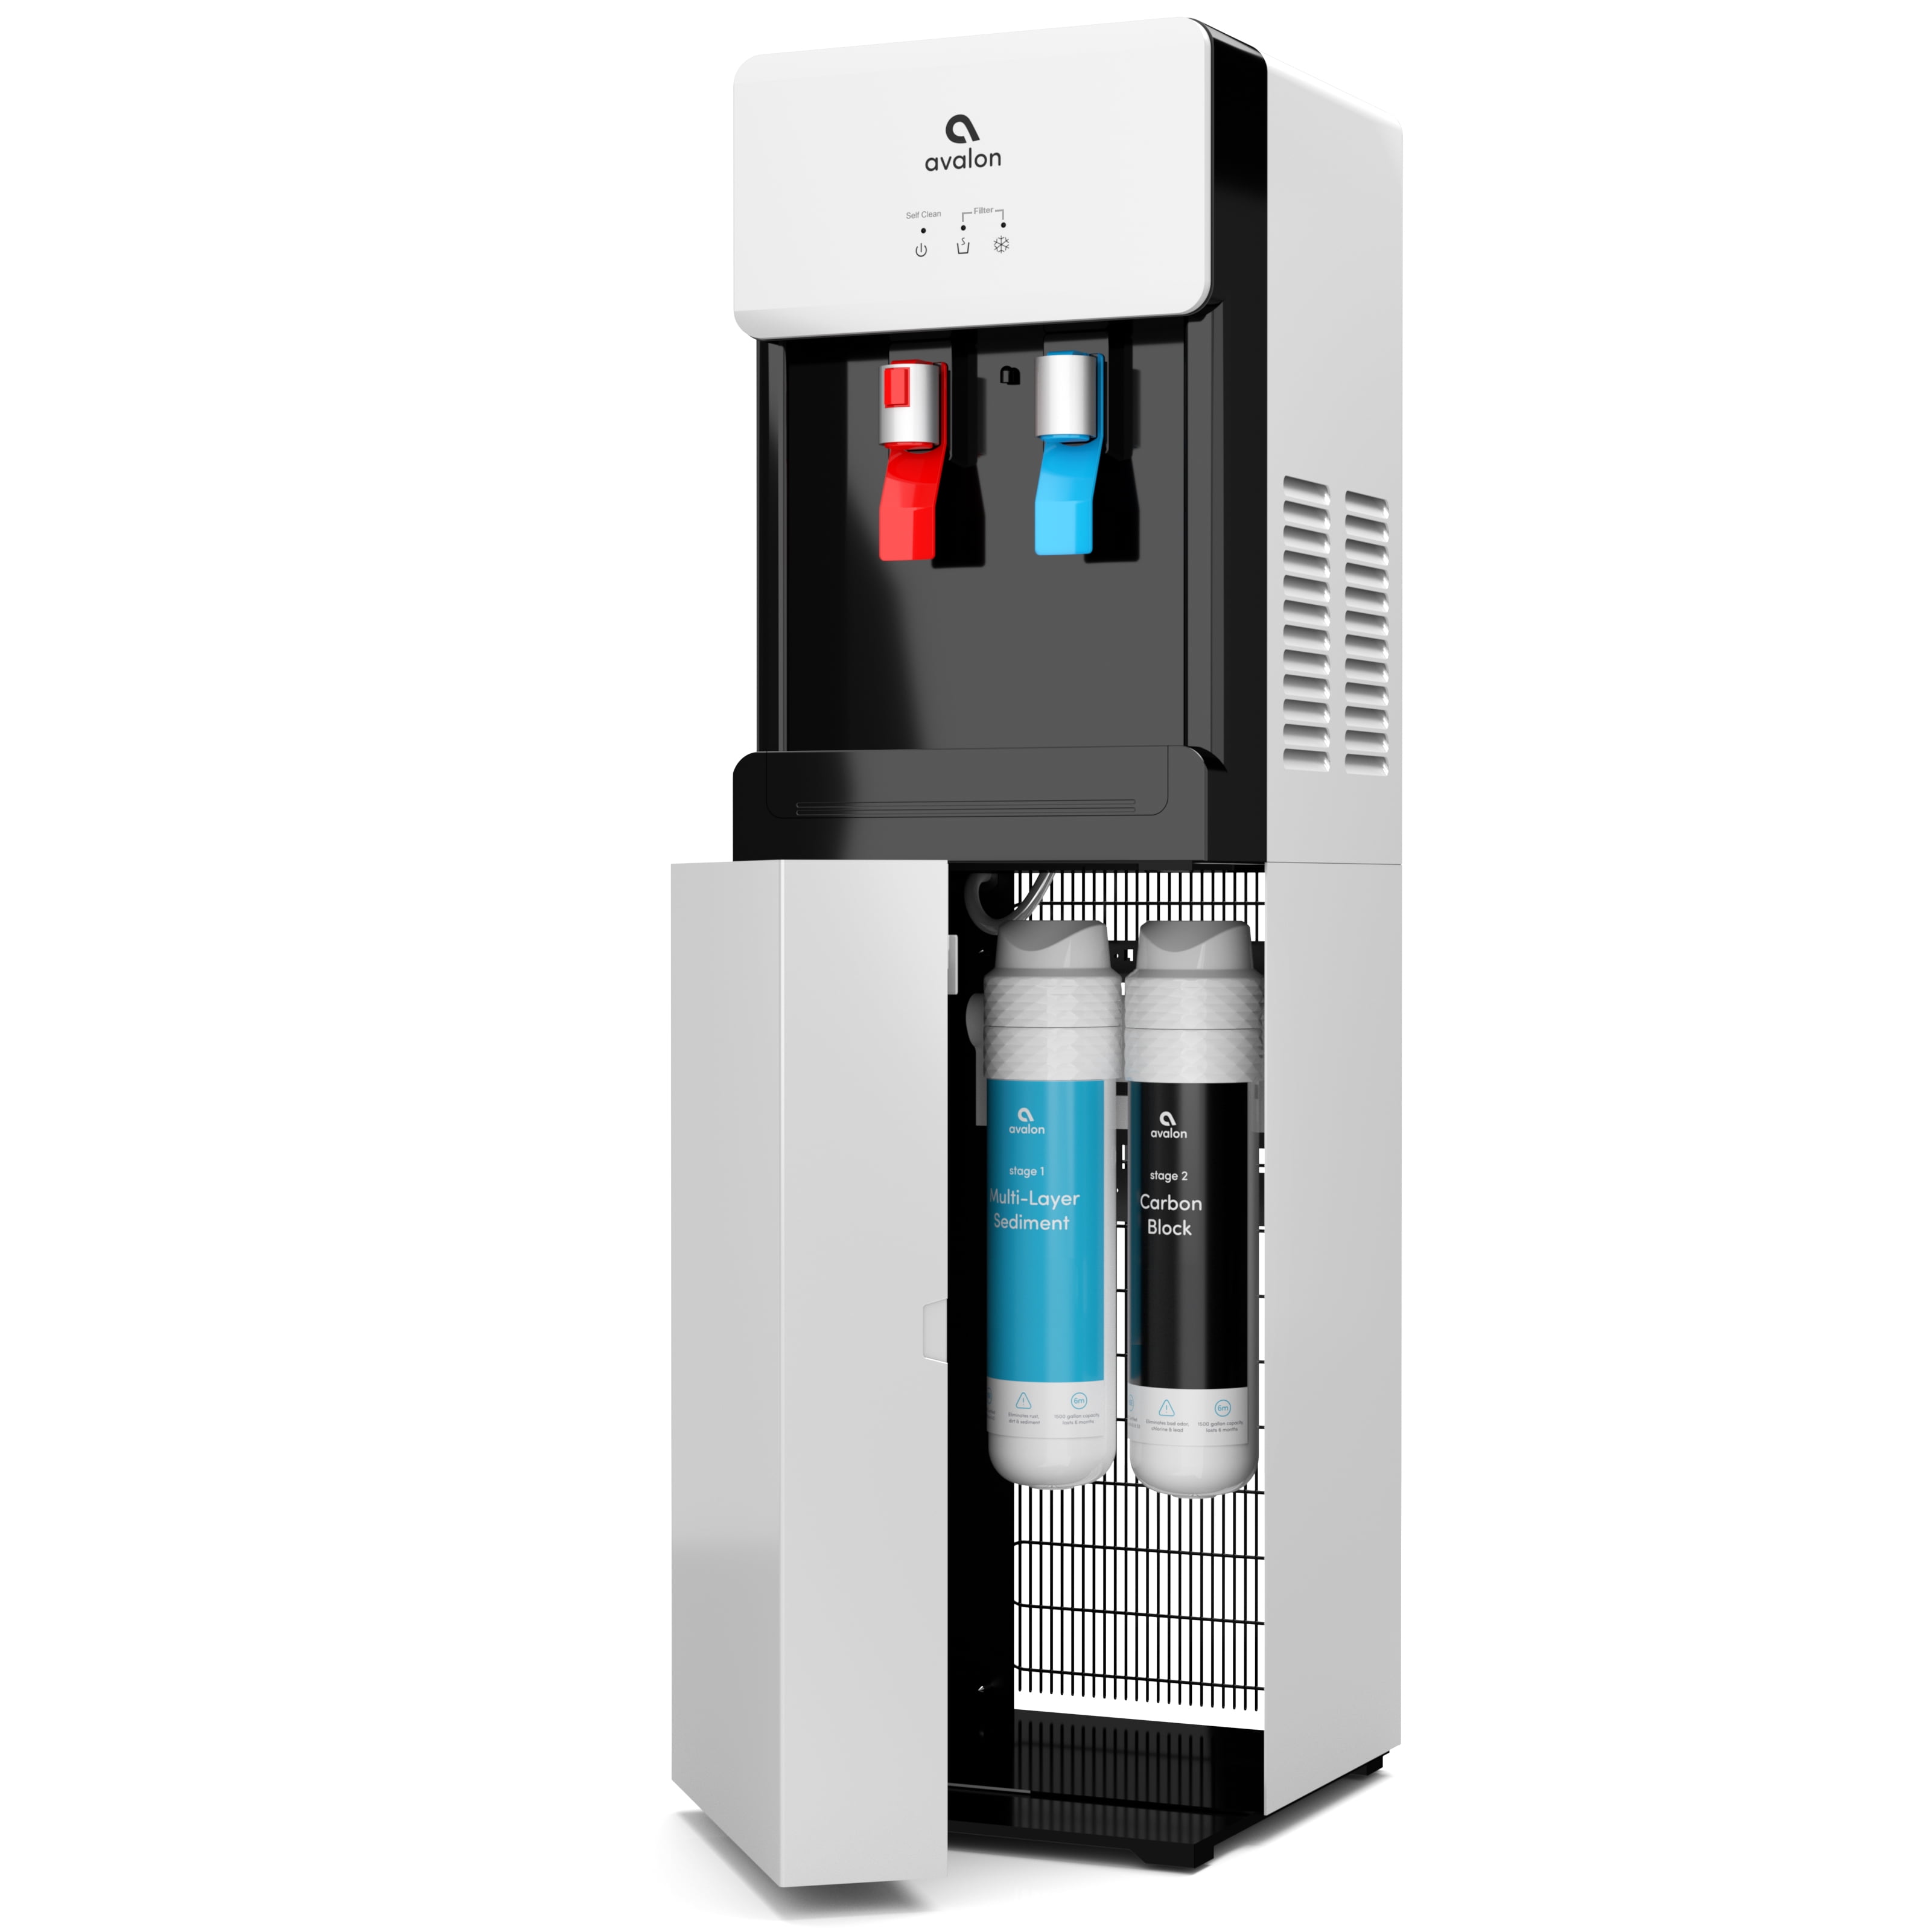 avalon countertop self cleaning bottleless water cooler water dispenser